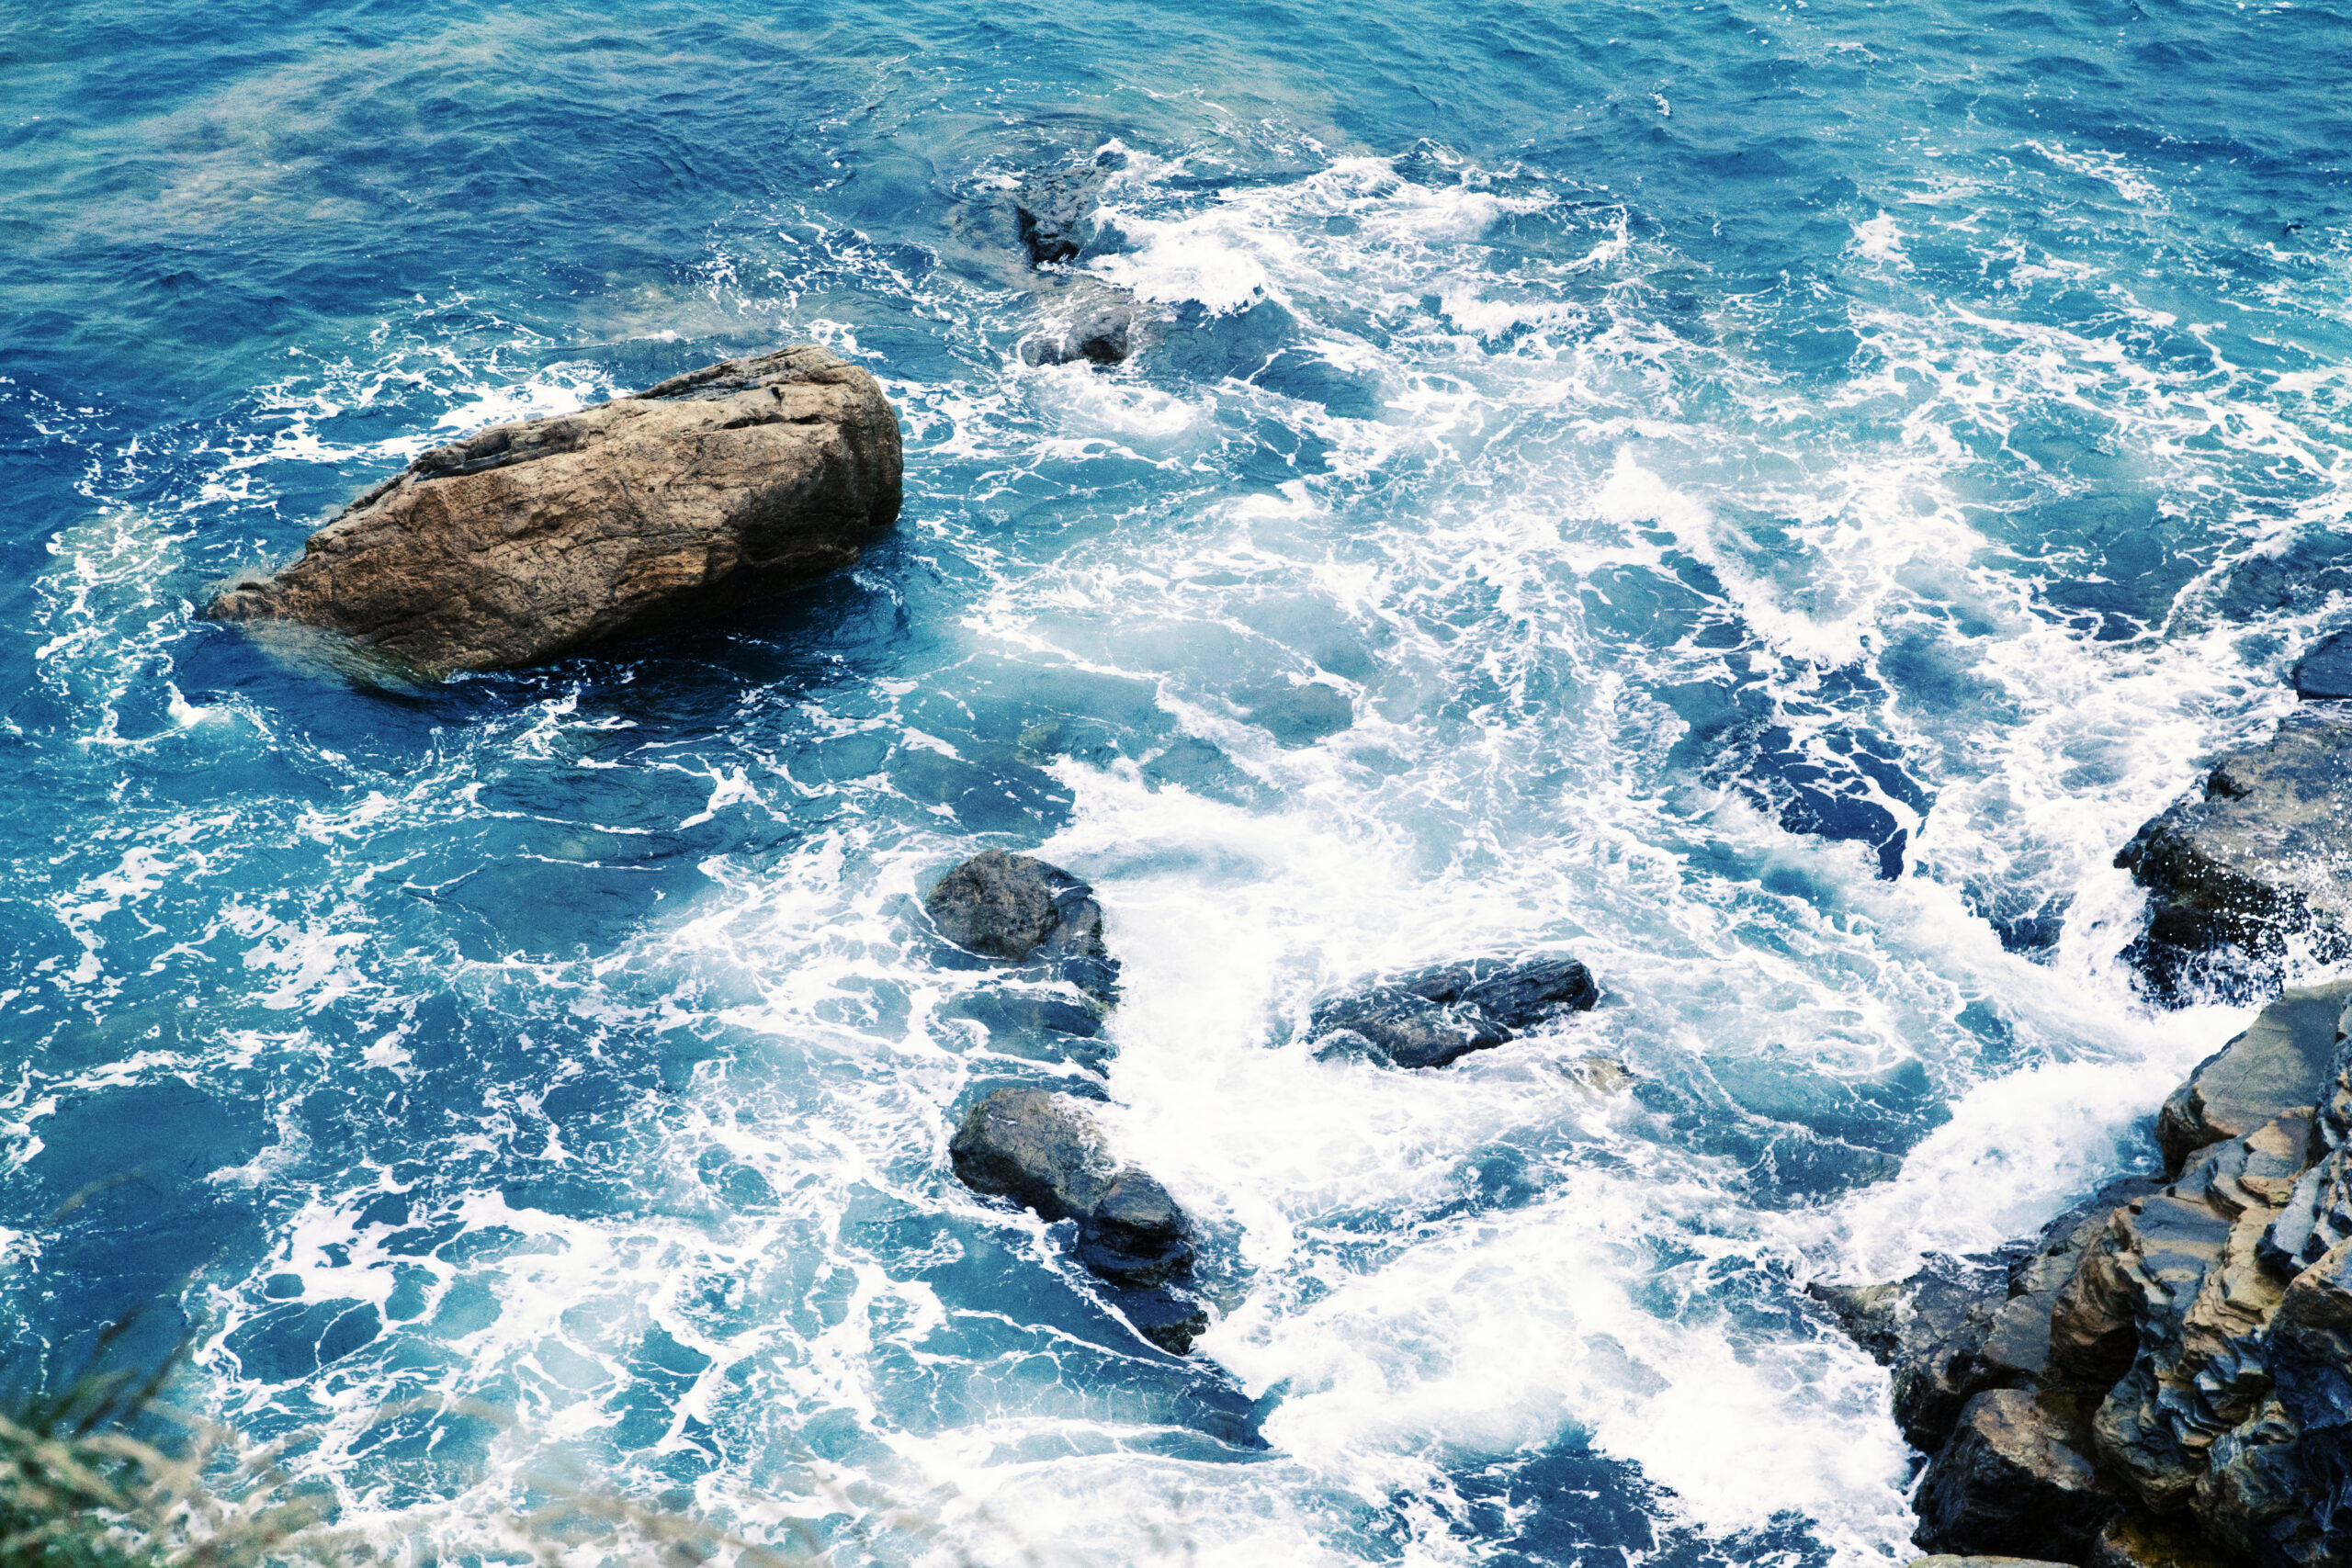 Splashing Waves In Blue Ocean, rocks in the sea